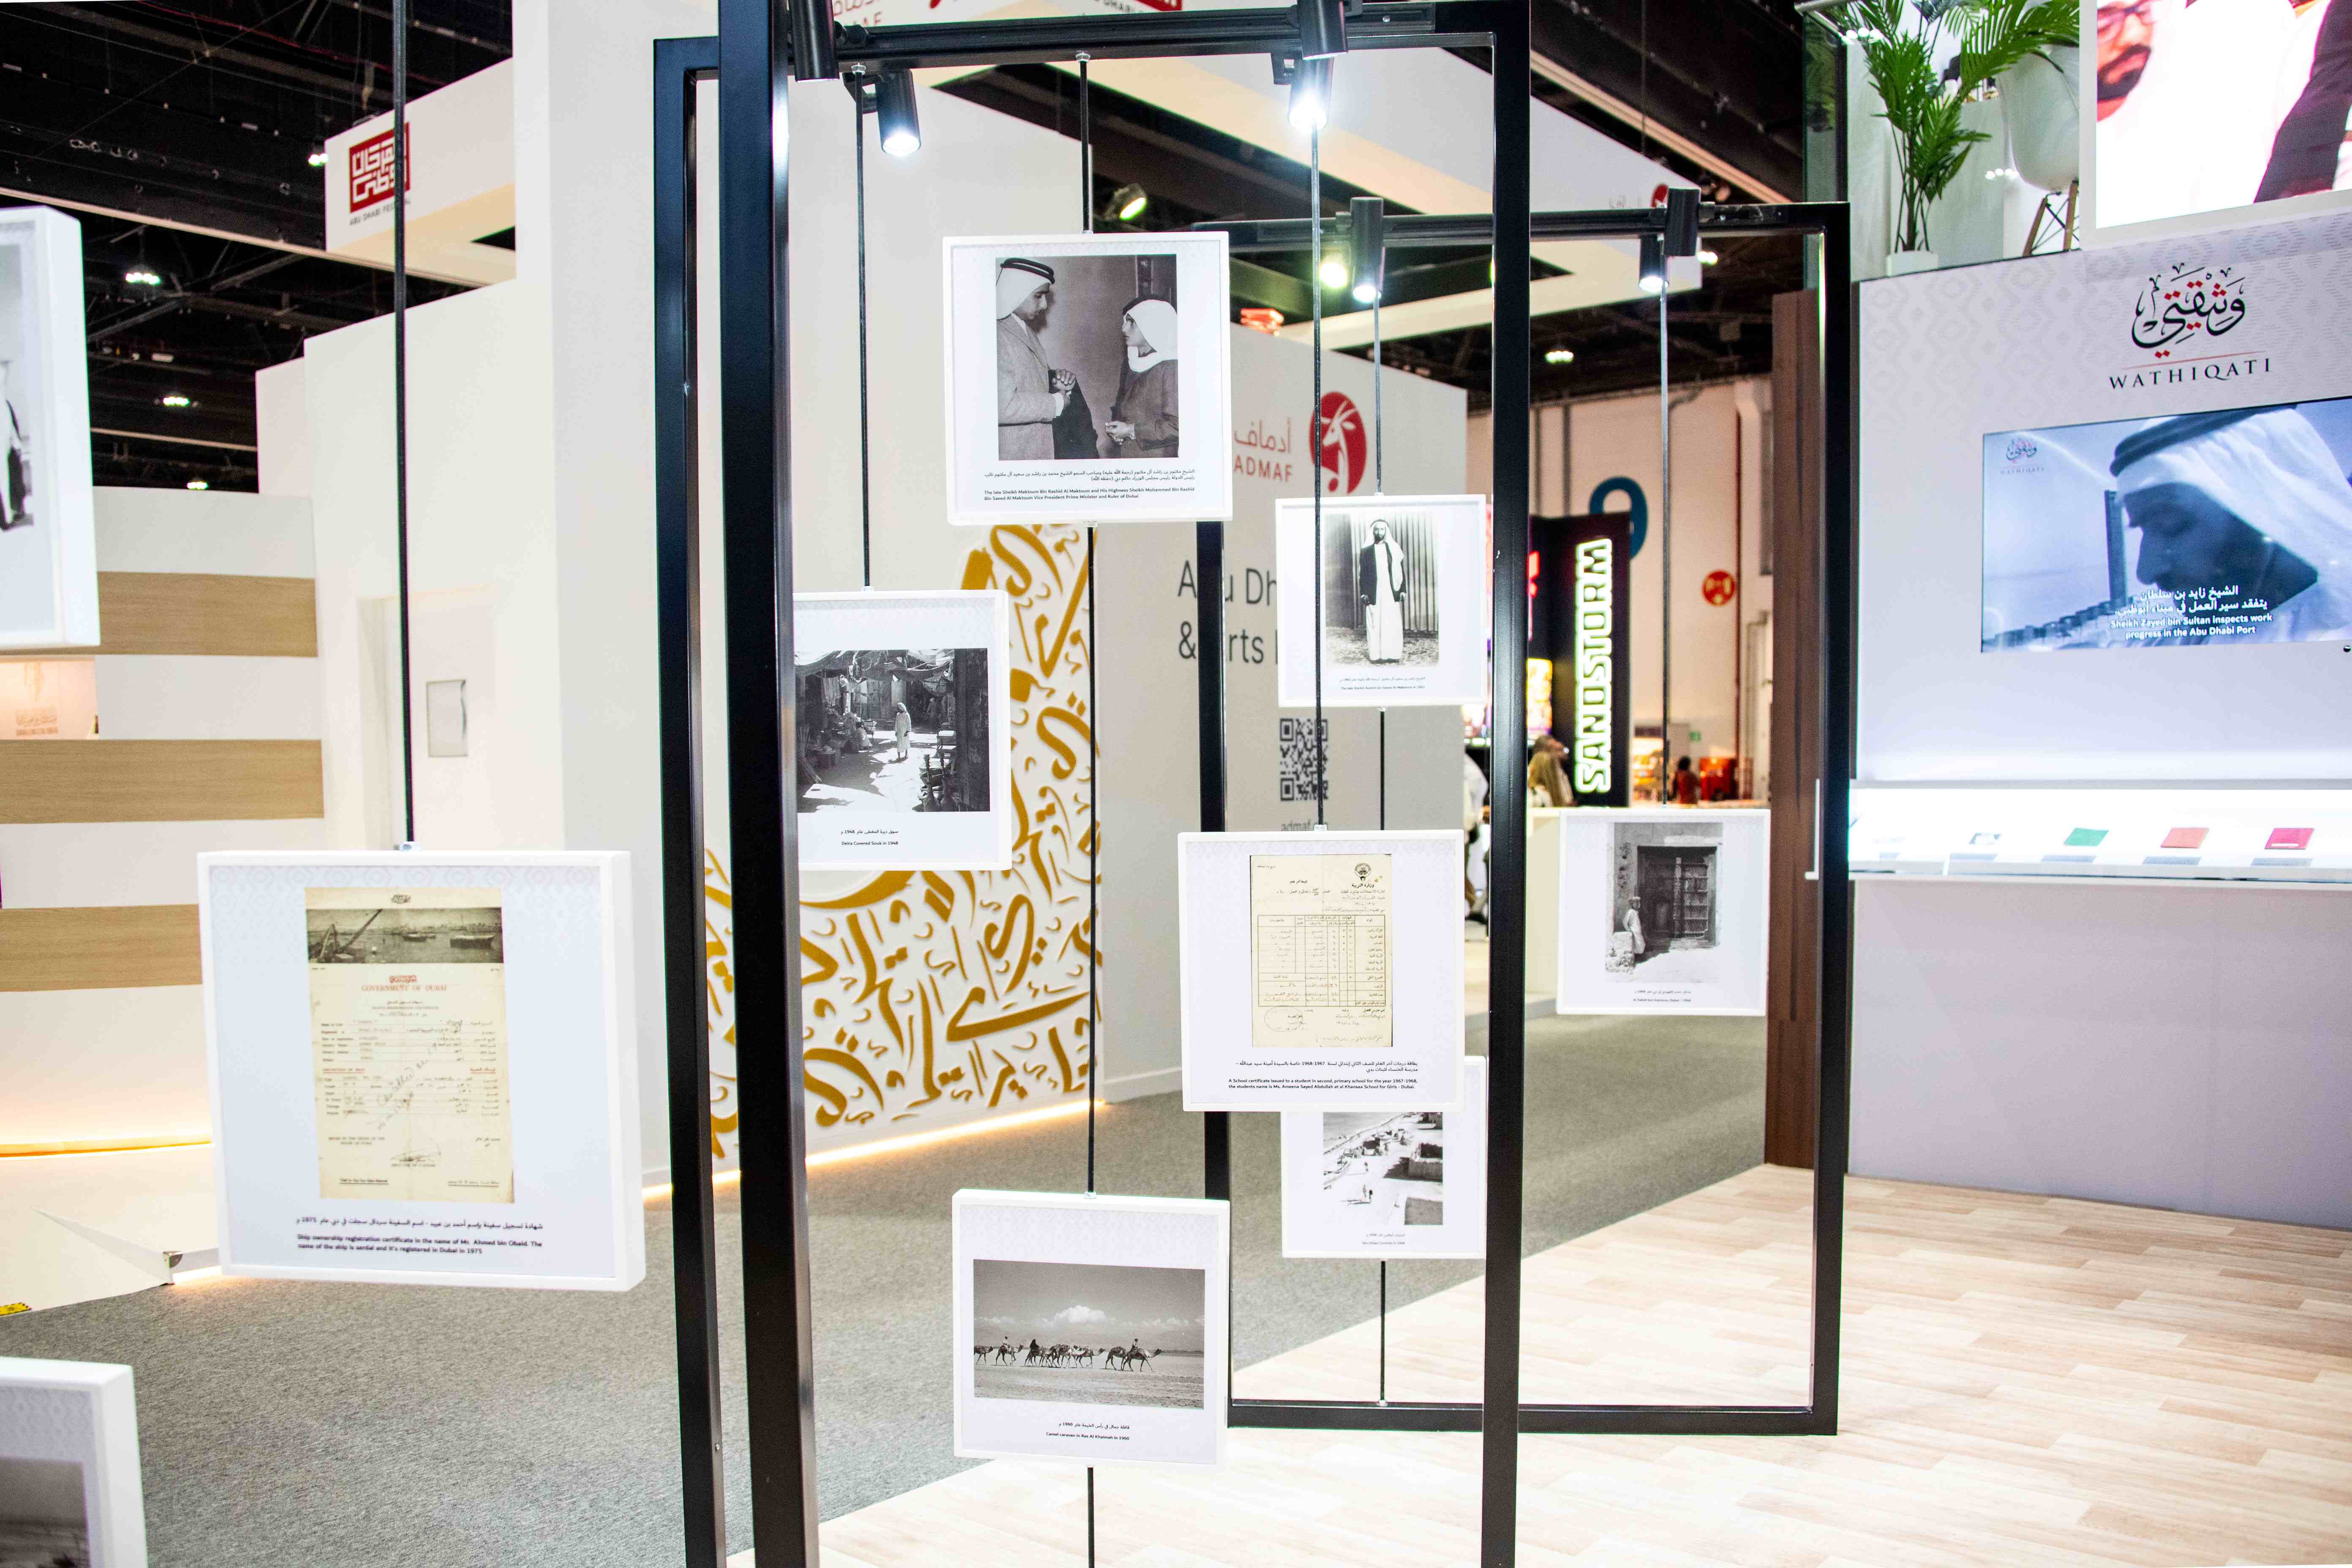    مركز حمدان بن محمد لإحياء التراث يشارك في معرض أبوظبي الدولي للكتاب في دورته الـ 33    